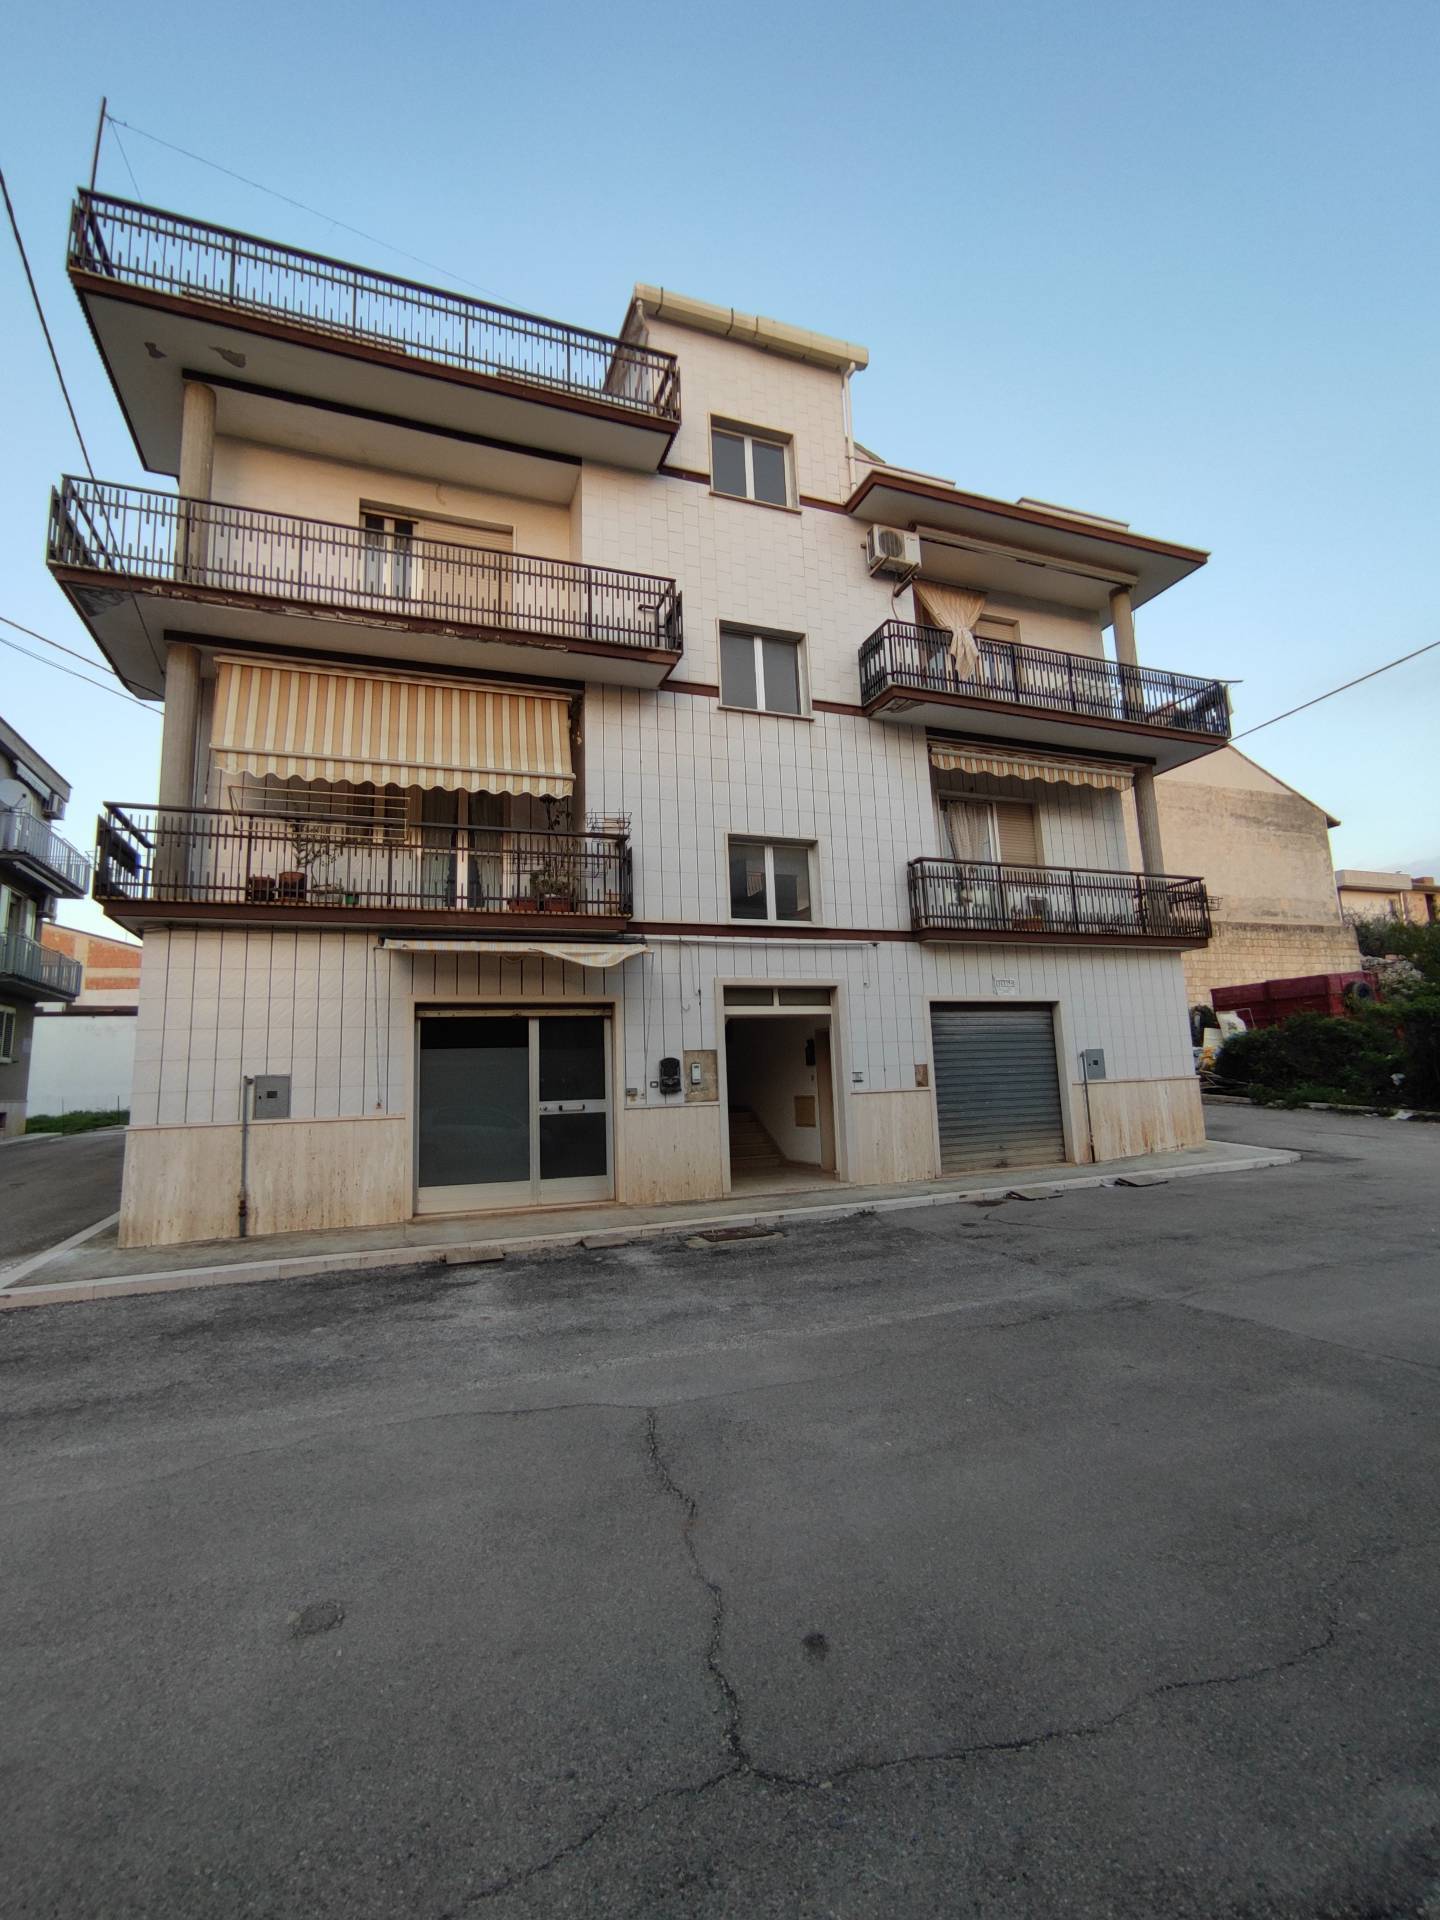 Appartamento in vendita a San Nicandro Garganico, 5 locali, zona Località: STAZIONE, prezzo € 88.000 | PortaleAgenzieImmobiliari.it